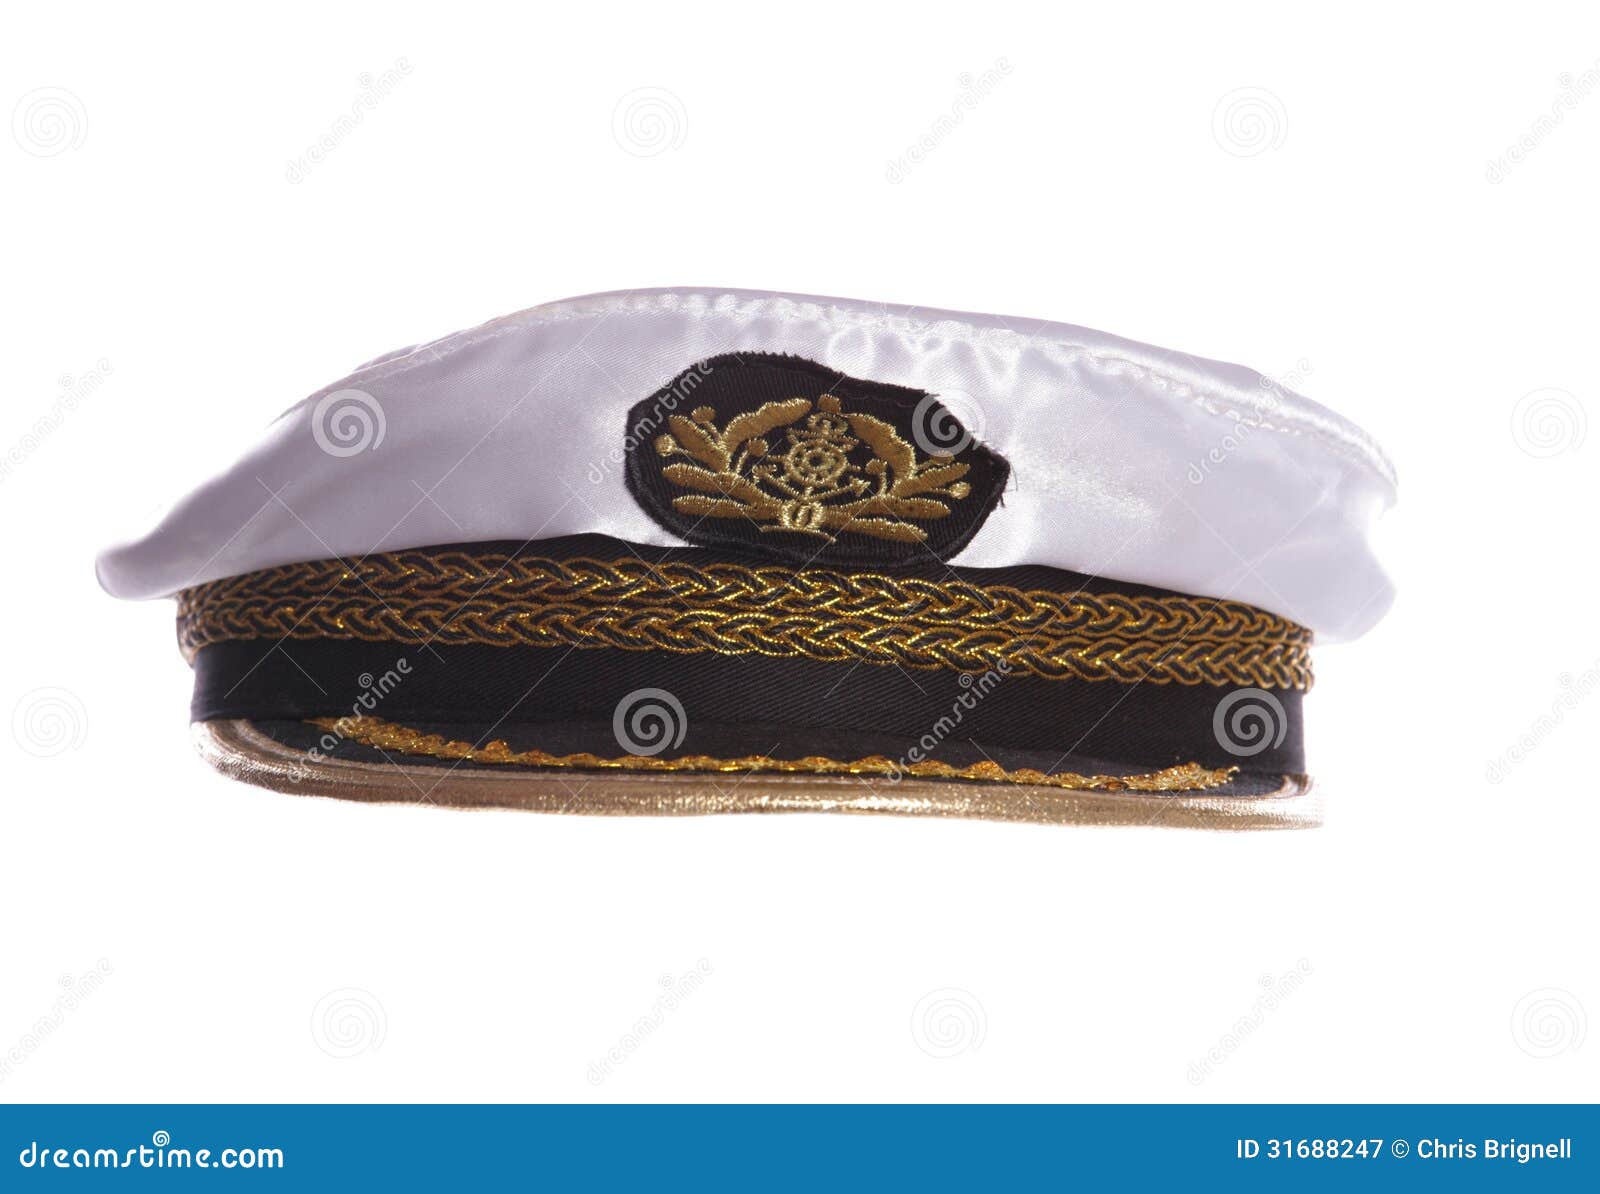 sailors hat